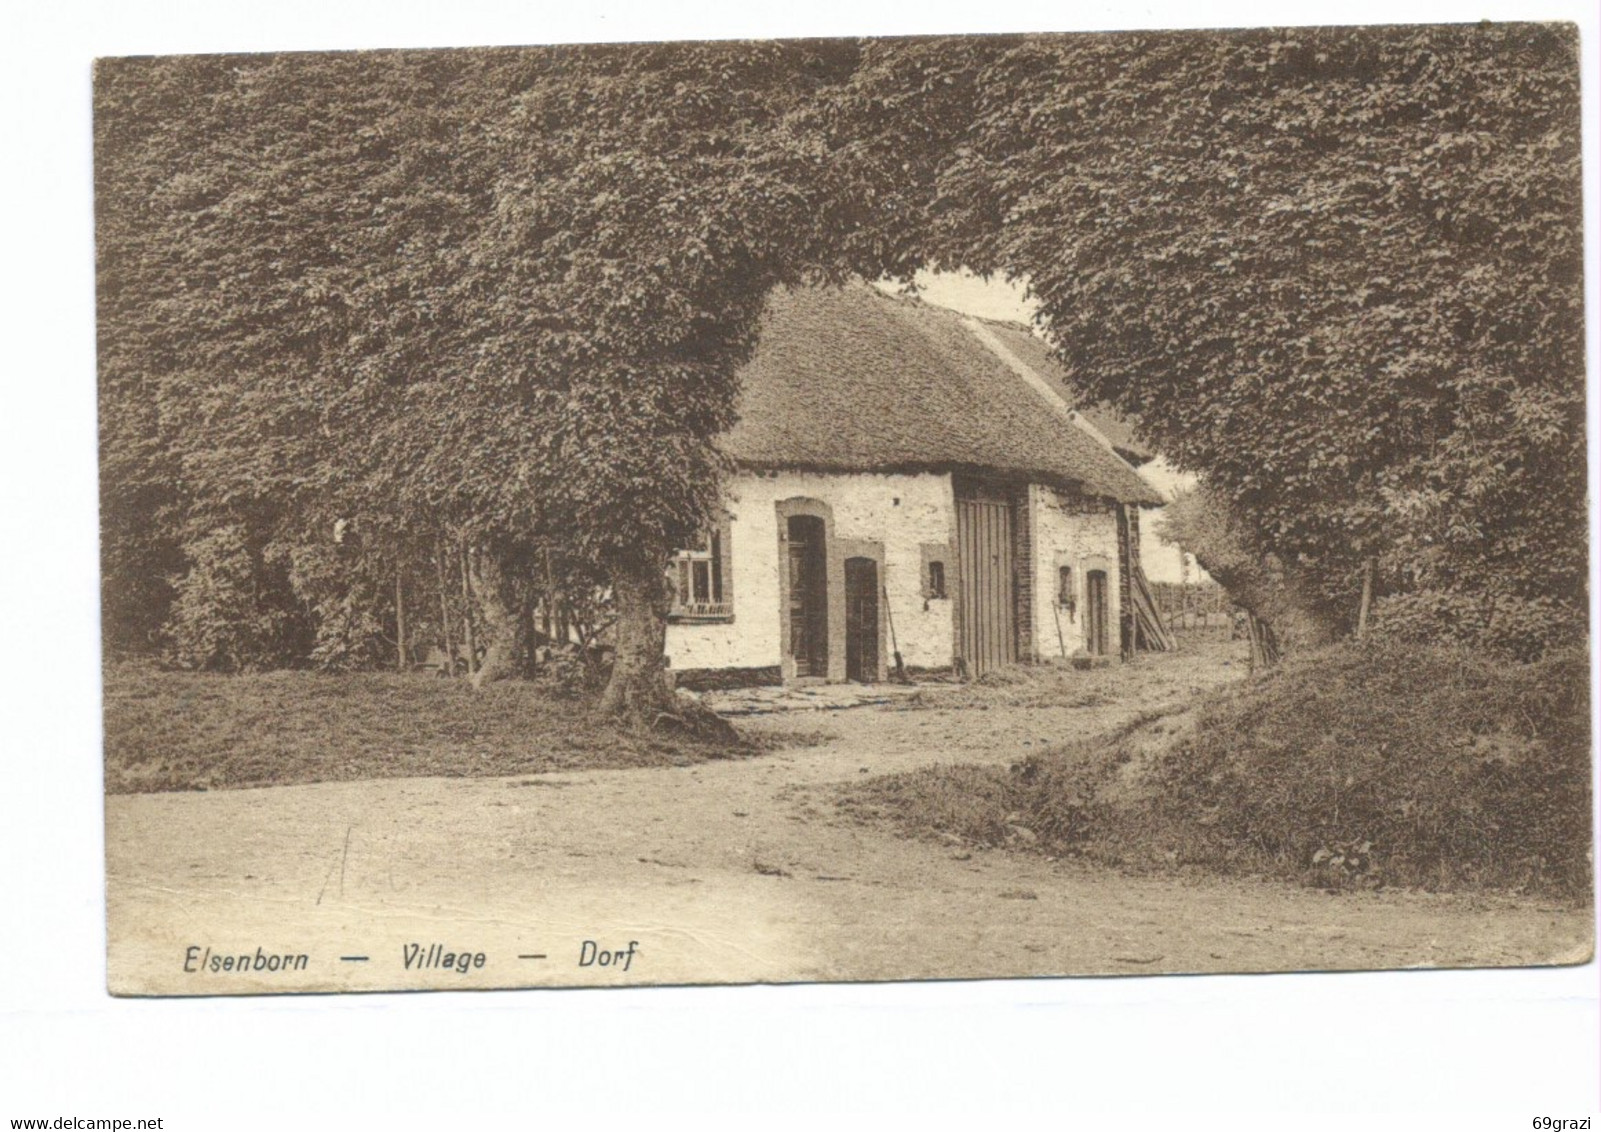 Elsenborn Village Dorf - Elsenborn (camp)